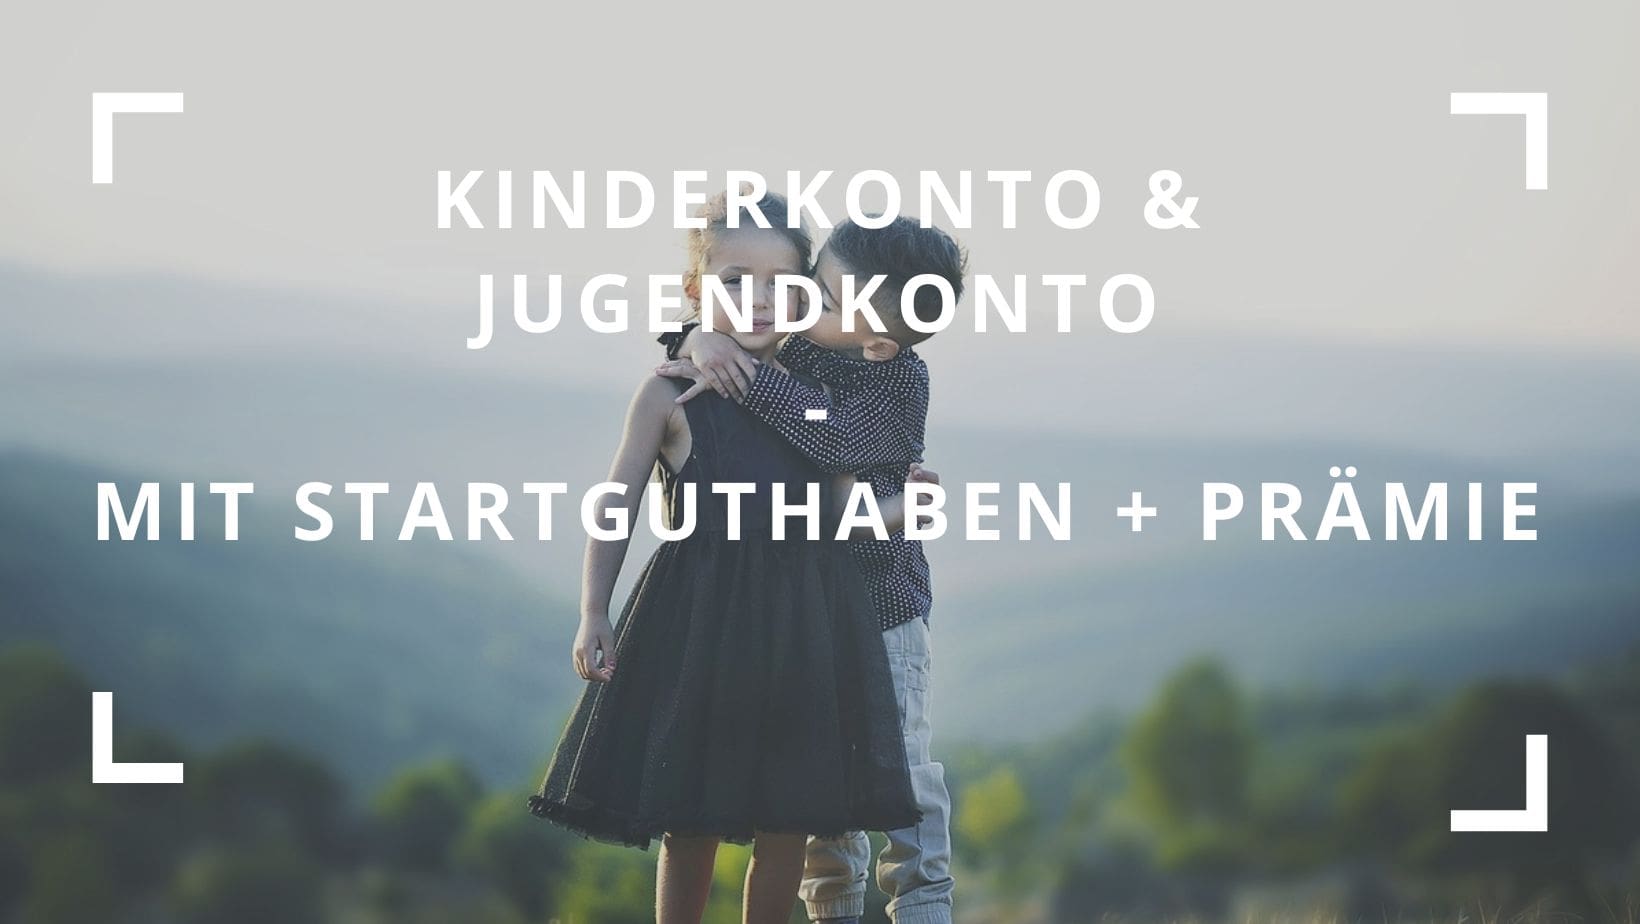 Titelbild zum Beitrag: "Kinderkonto & Jugendkonto mit Startguthaben + Prämie"